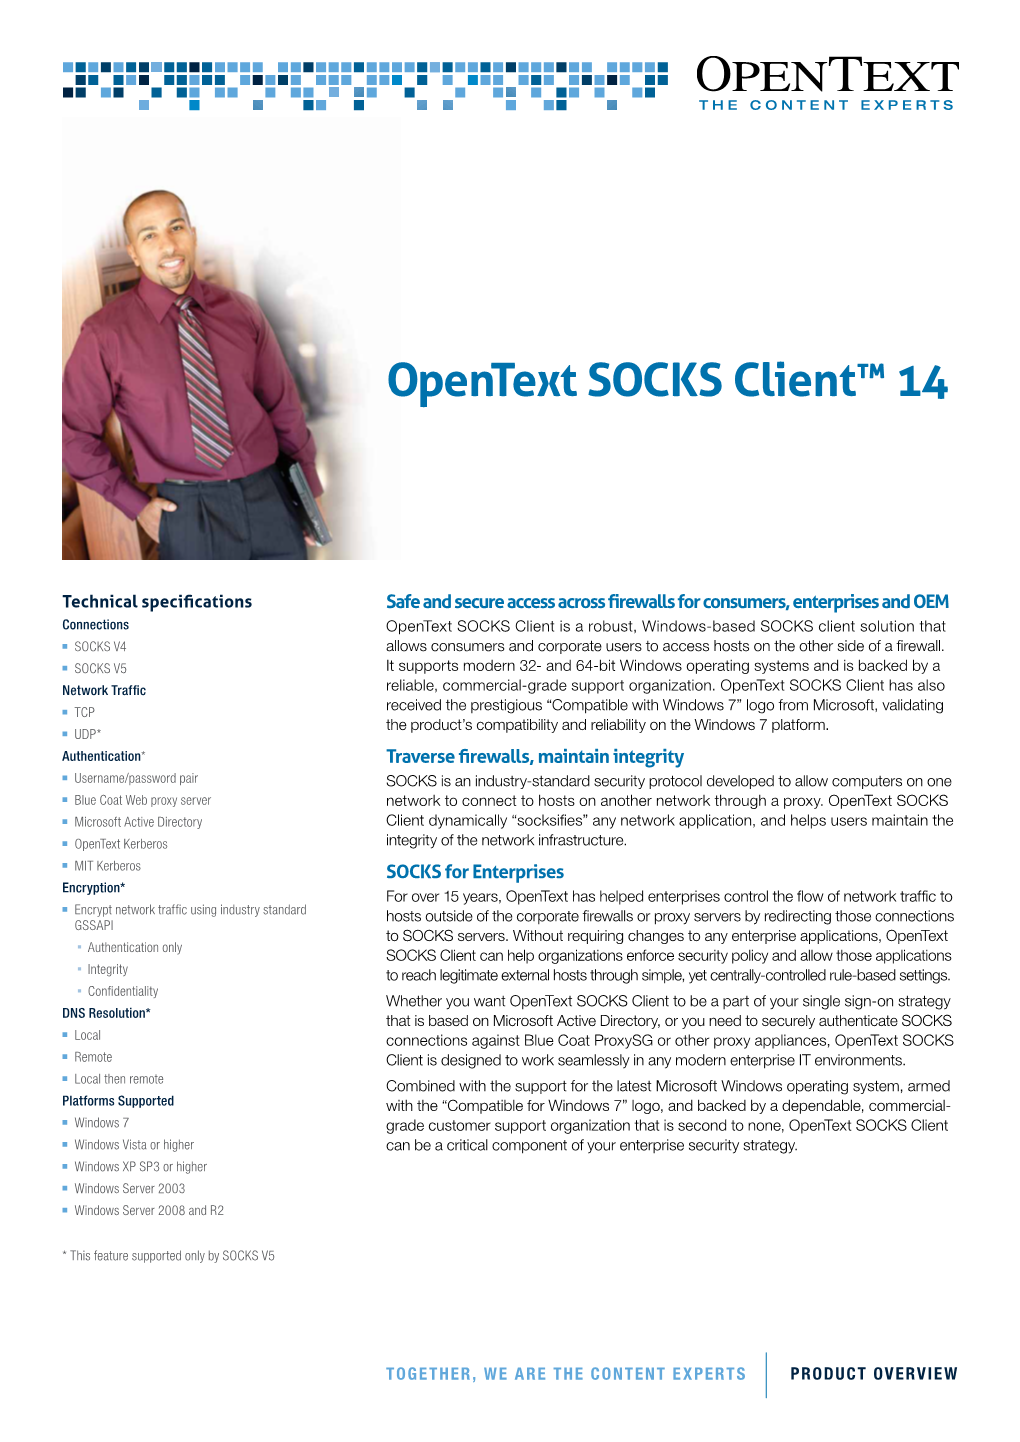 Opentext SOCKS Client™ 14